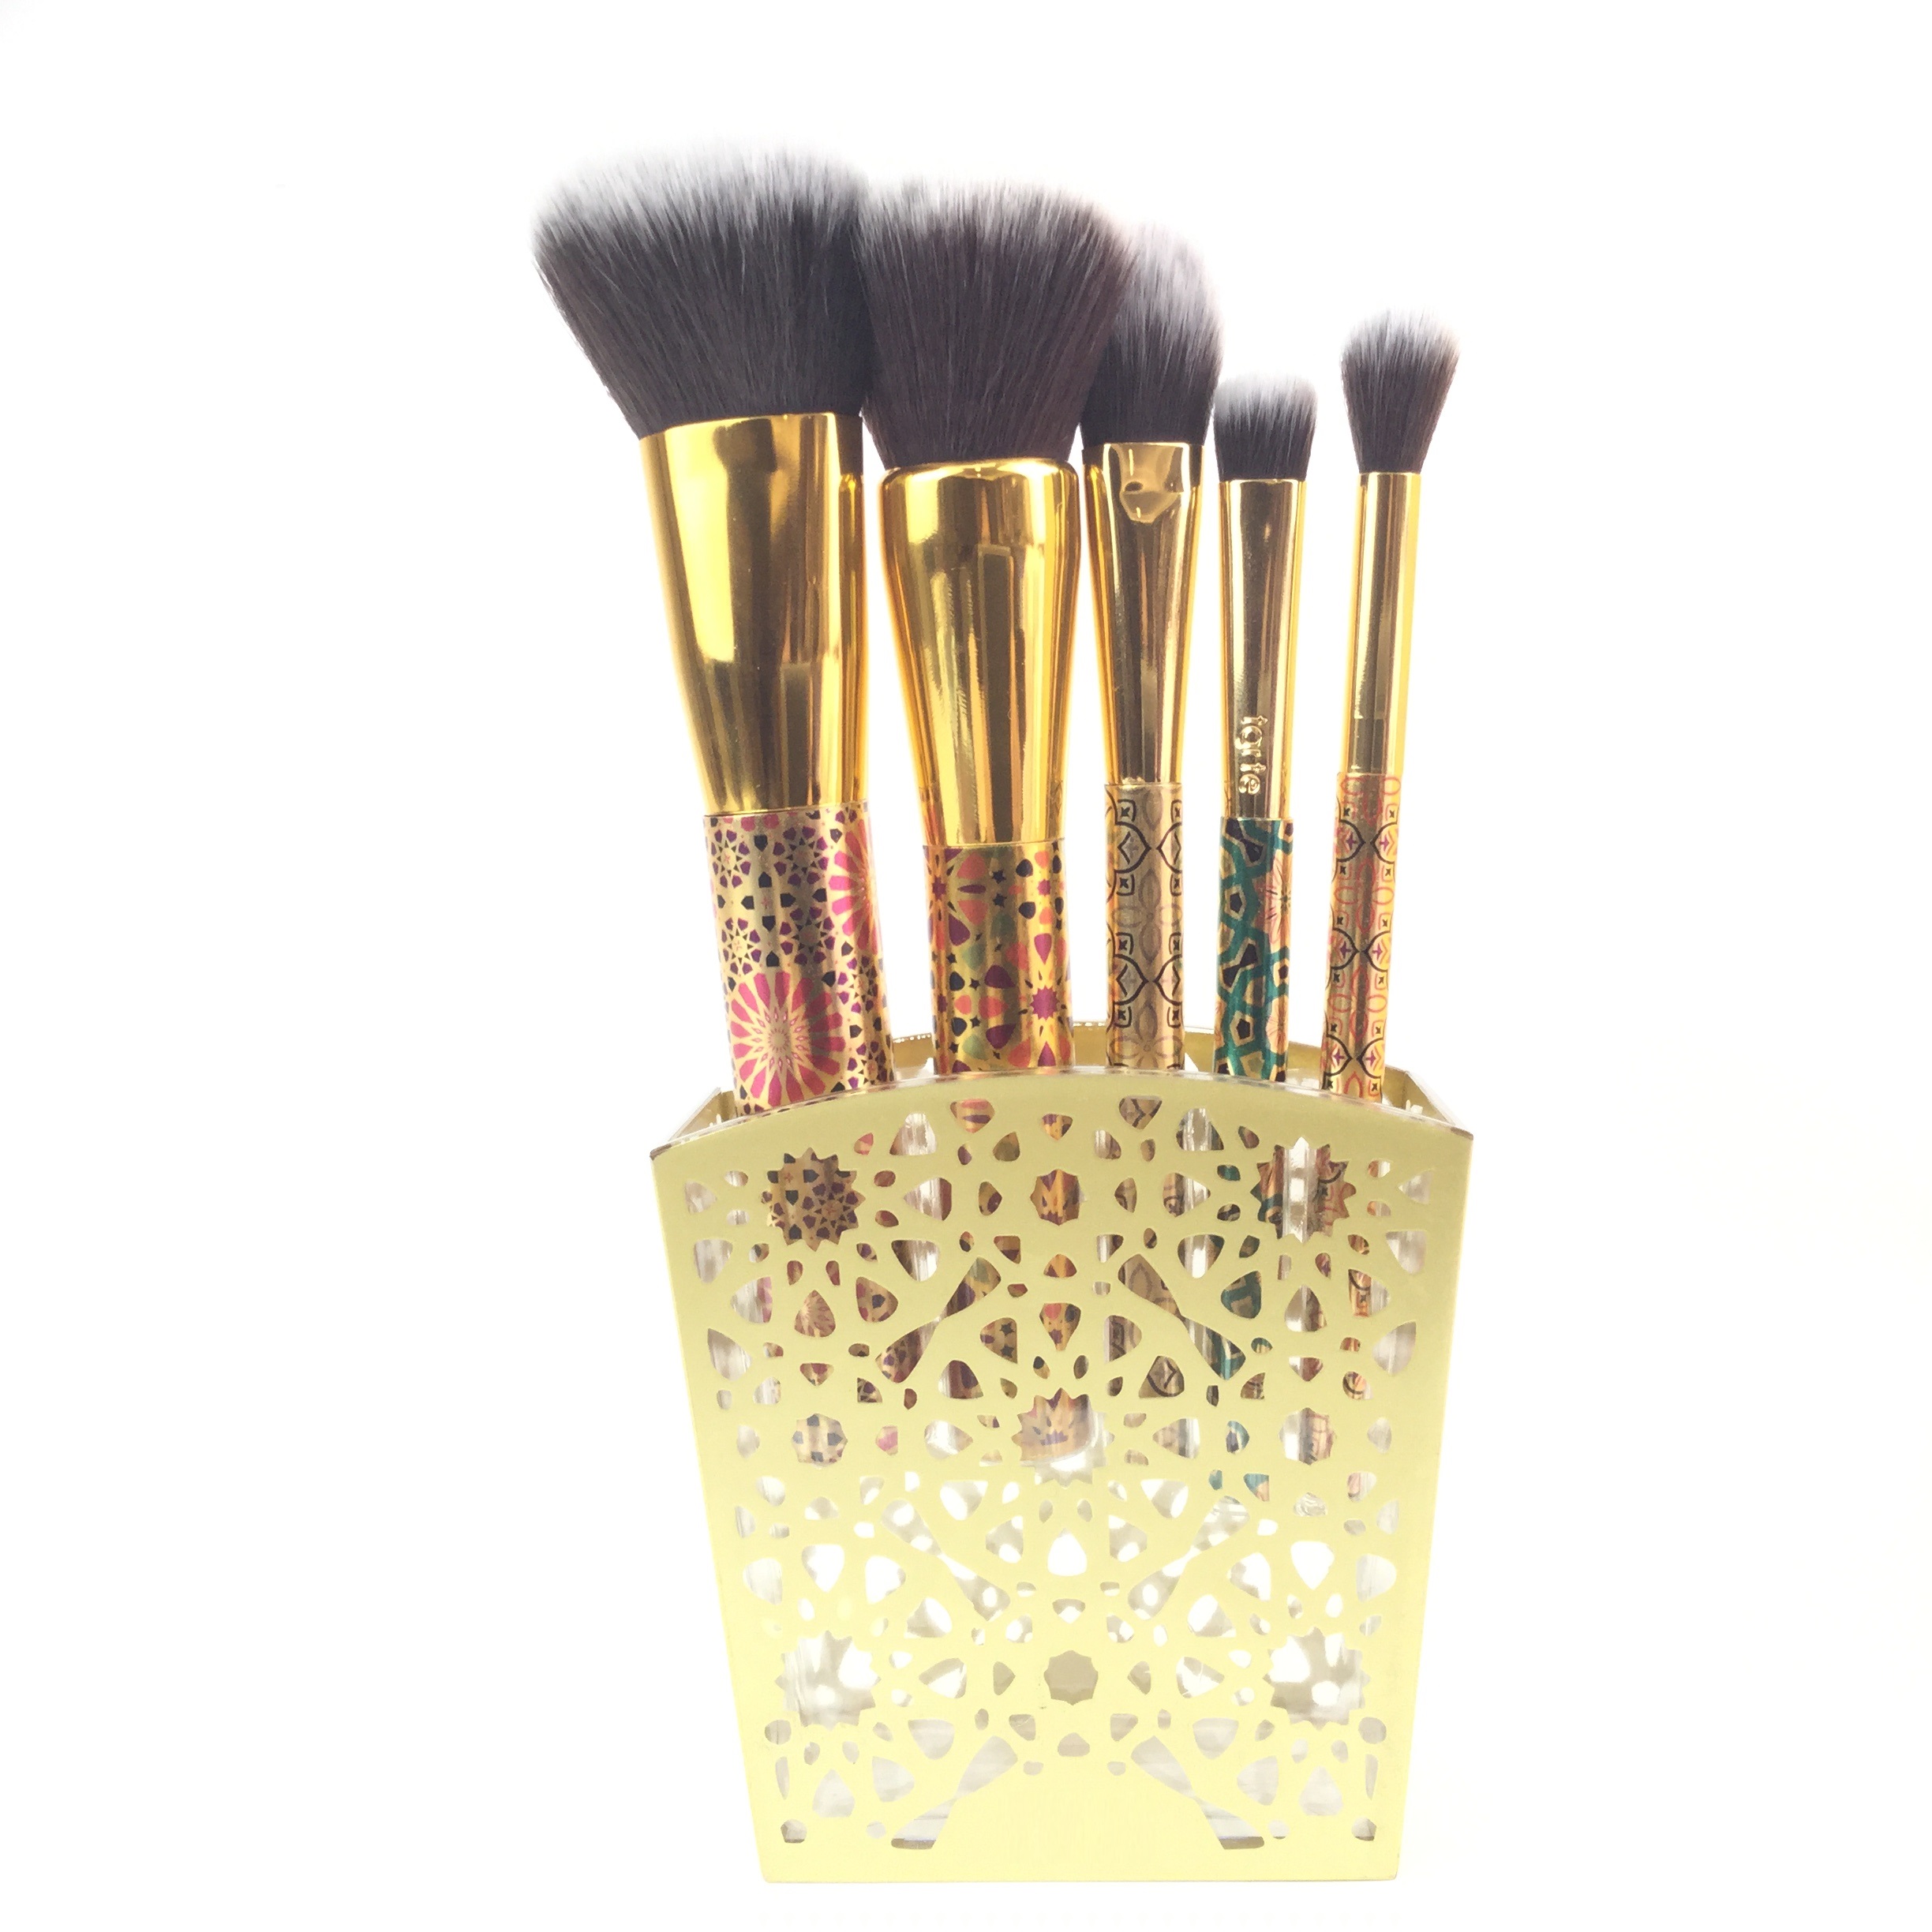 Brosse de maquillage de motif doré avec support (5 pcs)